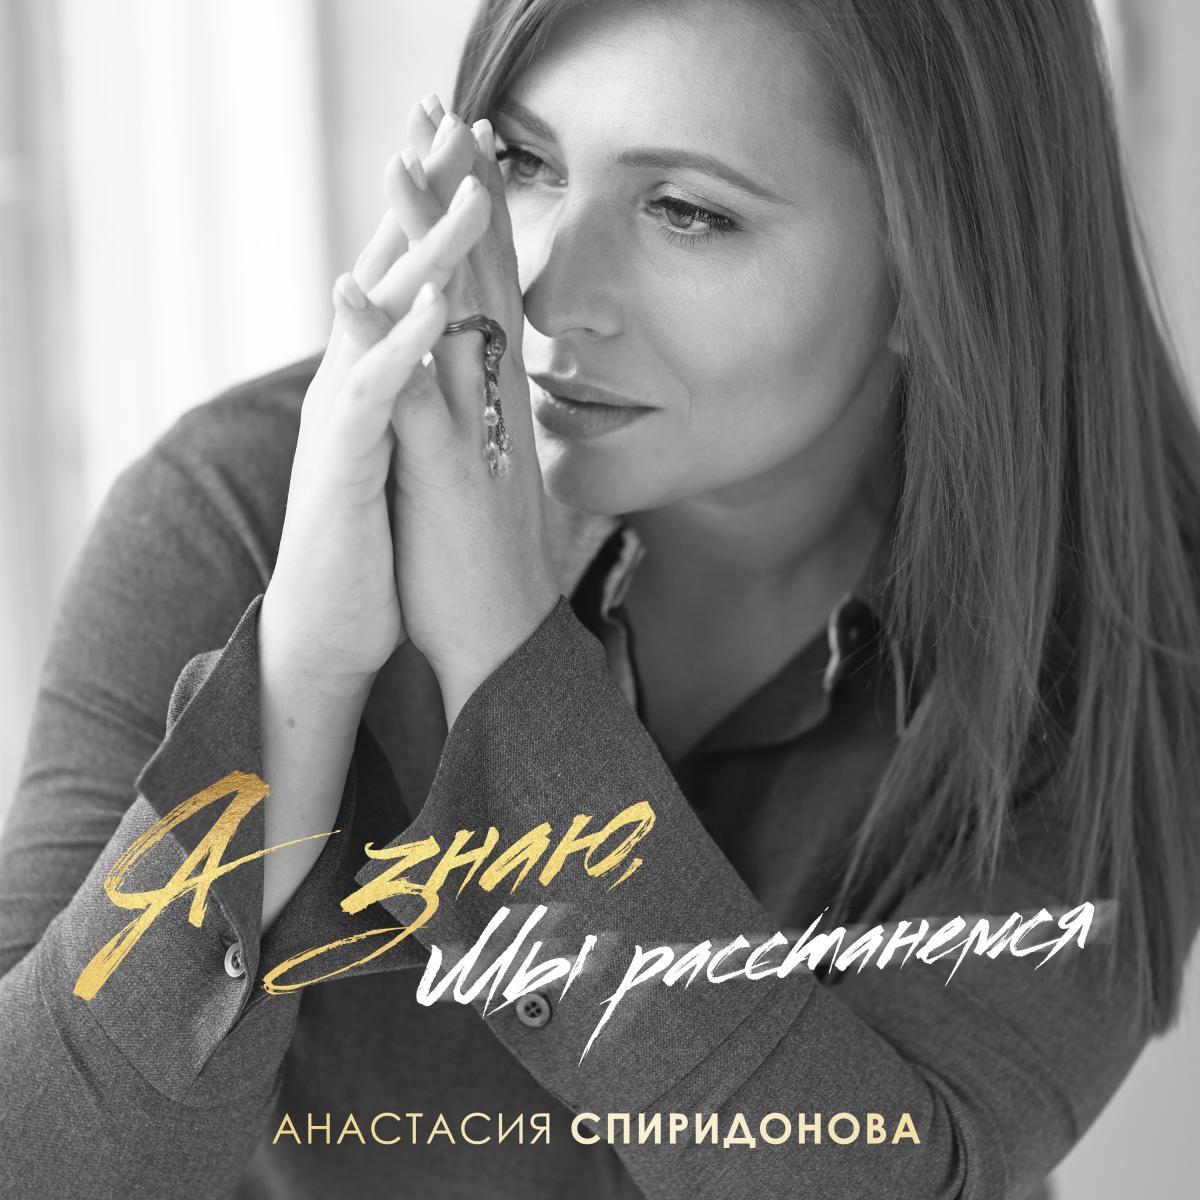 «Я знаю, мы расстанемся»: Анастасия Спиридонова выпустила новую песню